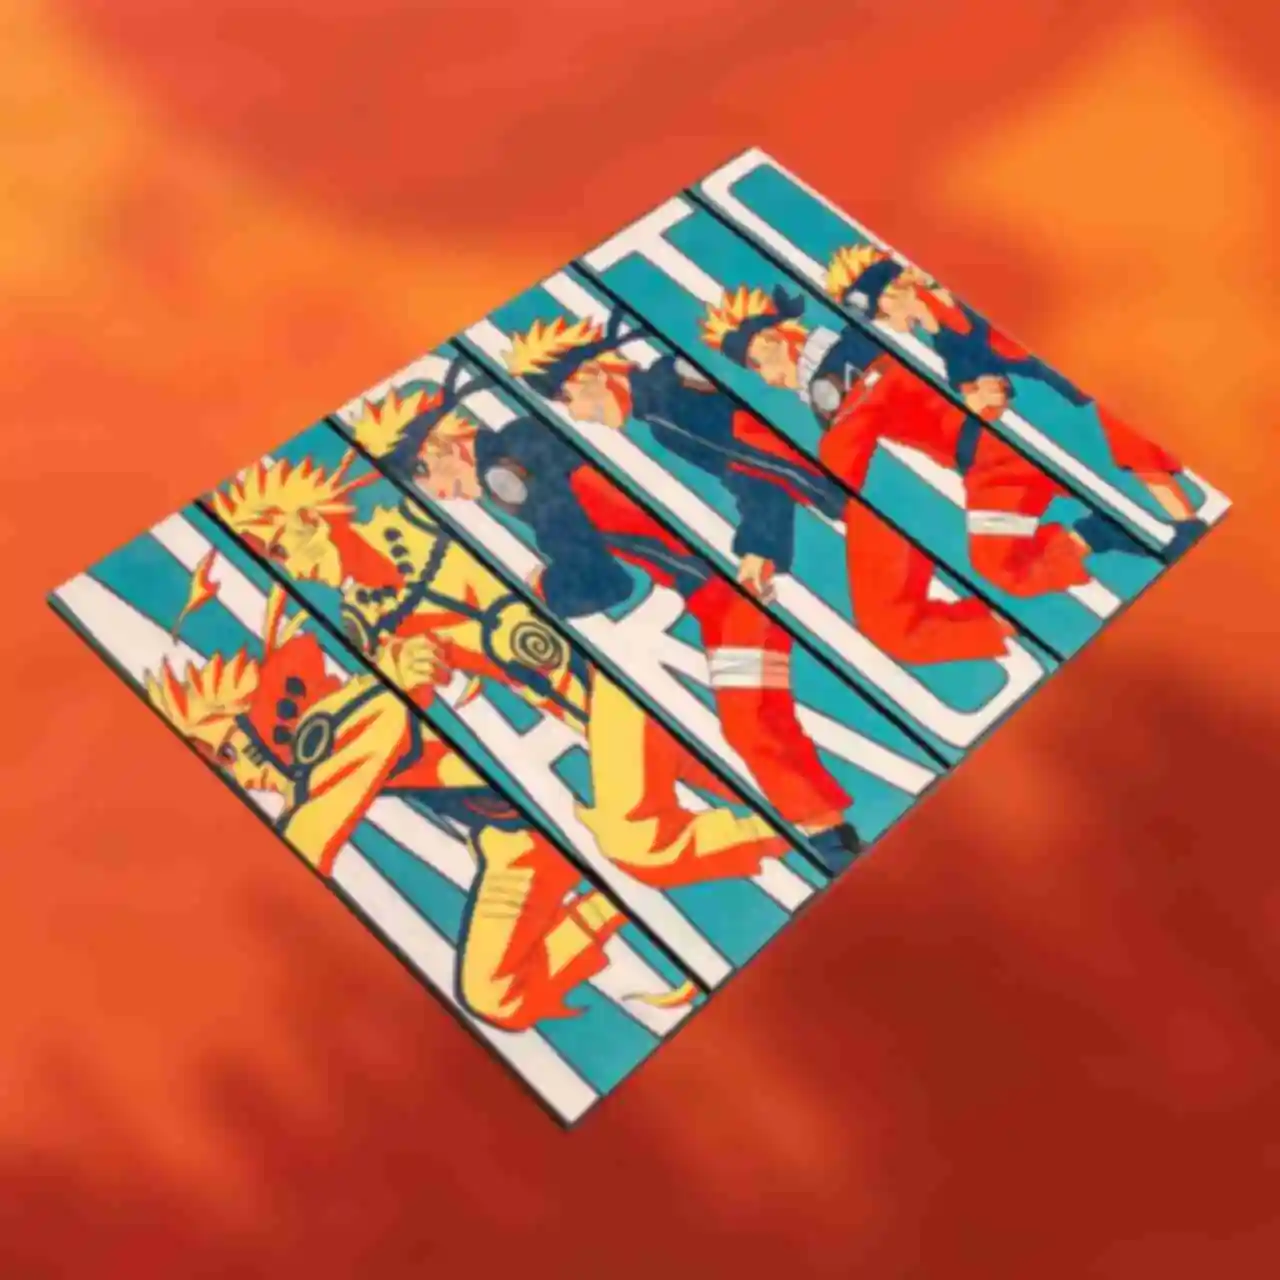 Деревянный постер №5 ⦁ Становление Наруто ⦁ Плакат ⦁ Подарки и сувениры в стиле аниме Naruto. Фото №81